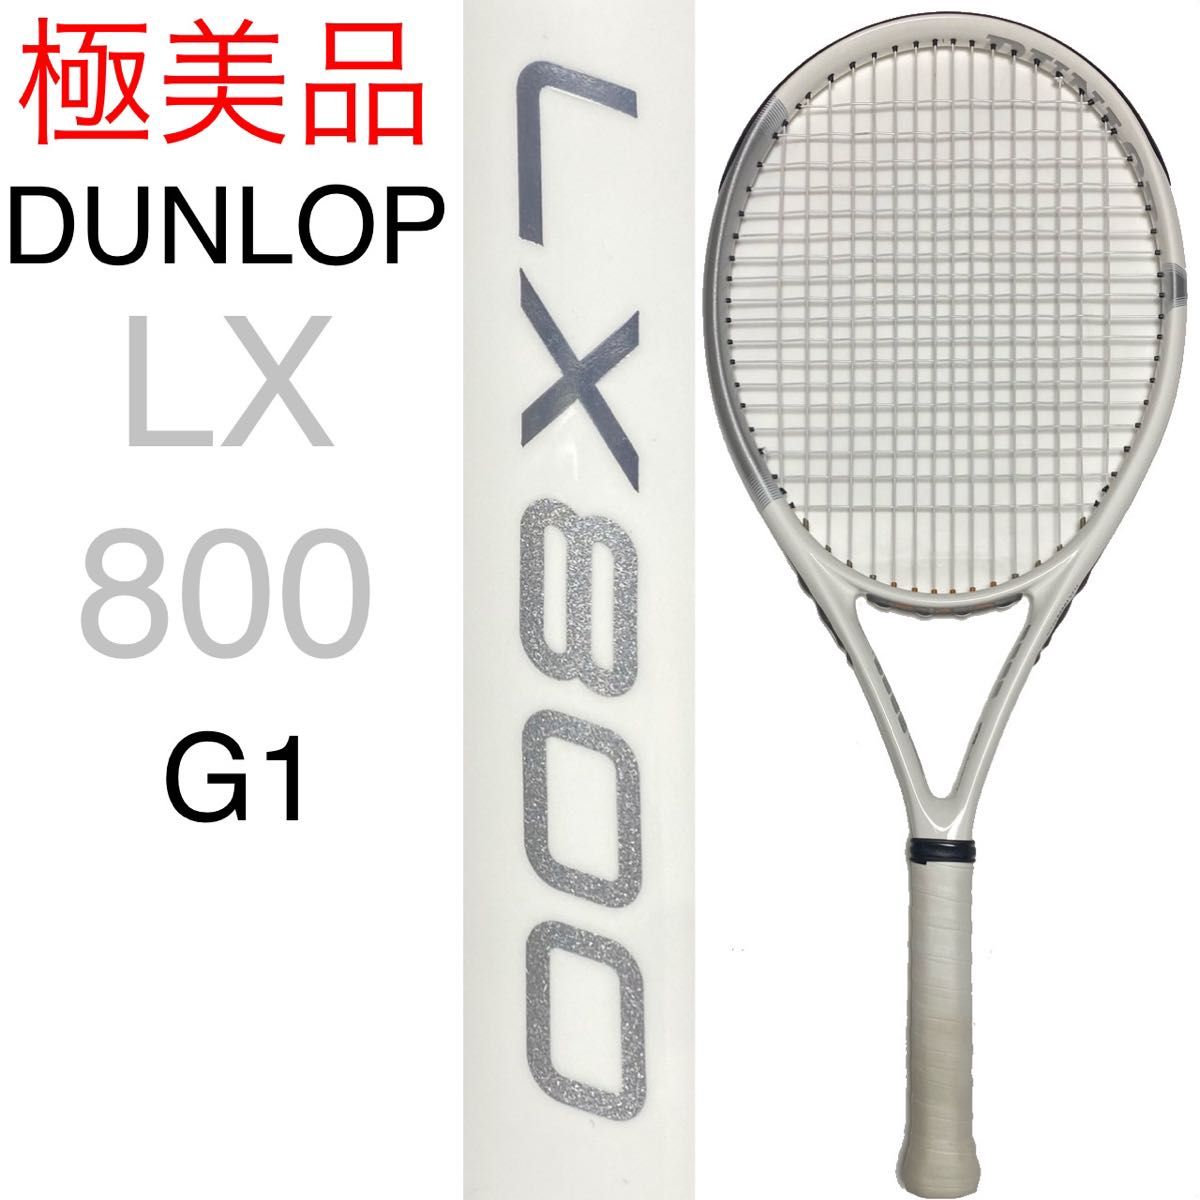 DUNLOP LX 800 ダンロップ エルエックス 800 G1 魔法のラケット デカラケ 硬式テニスラケット